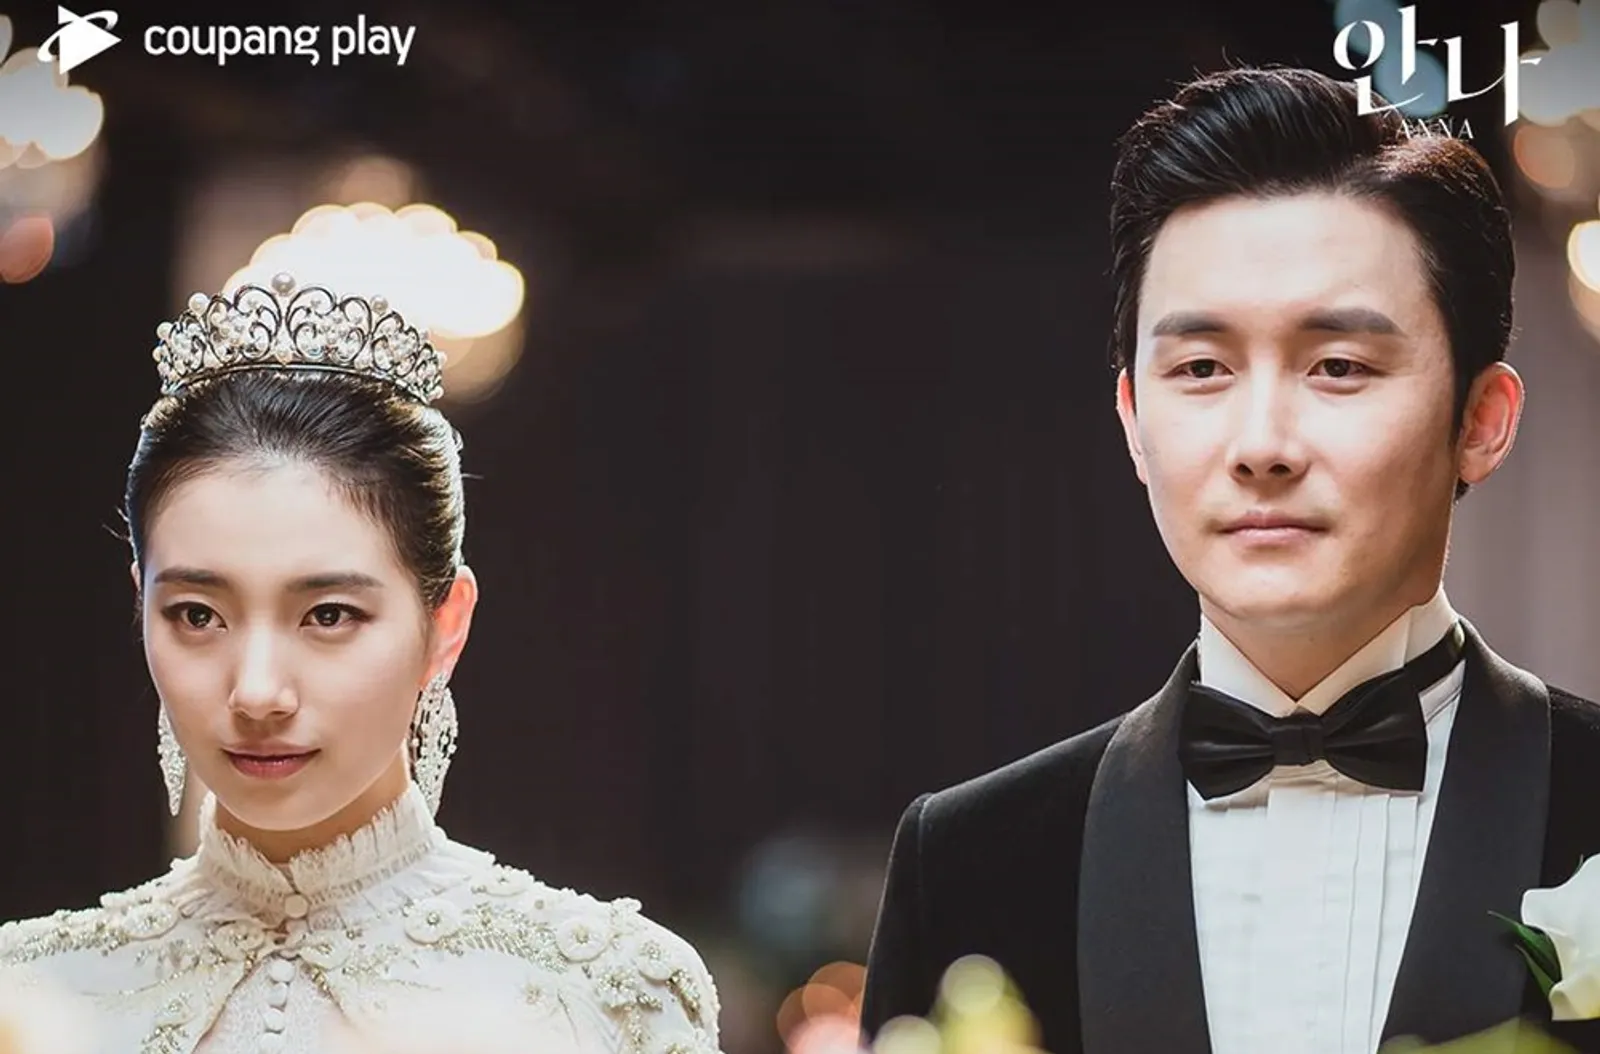 Sutradara K-Drama 'Anna' dan Coupang Play Bersitegang, Ini Faktanya